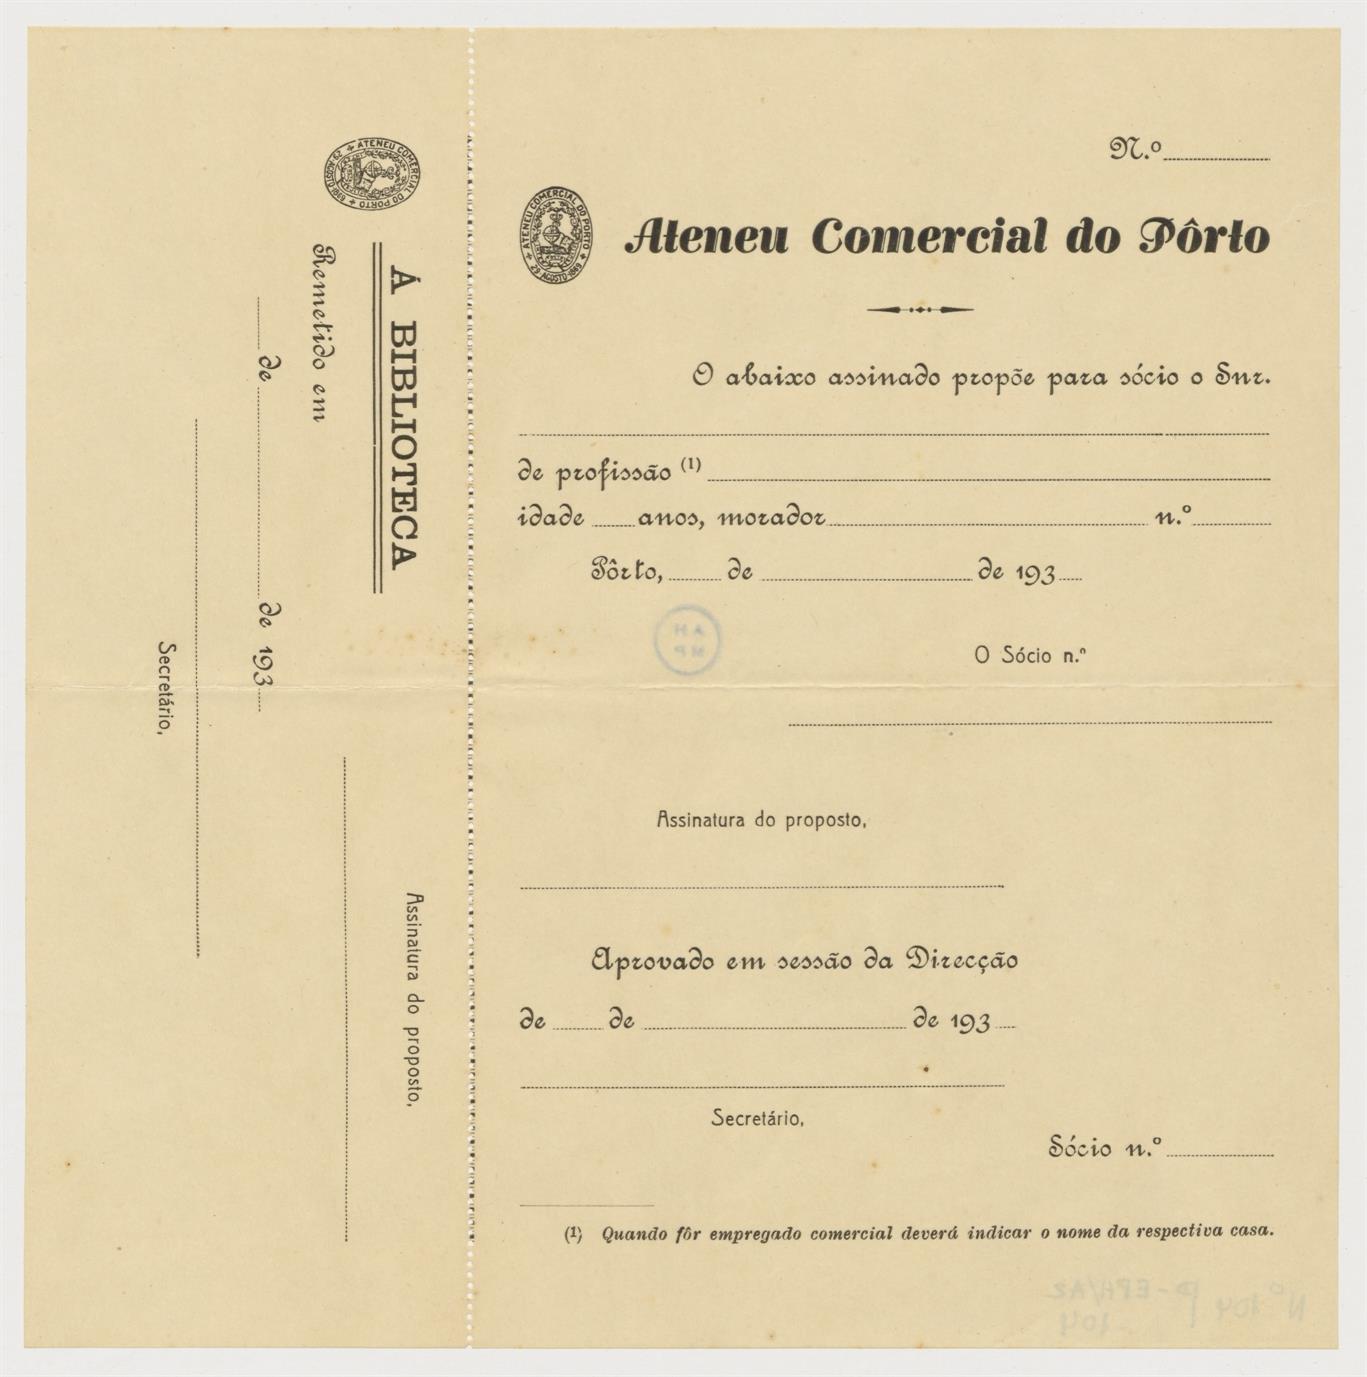 Proposta para admissão de sócio no Ateneu Comercial do Porto